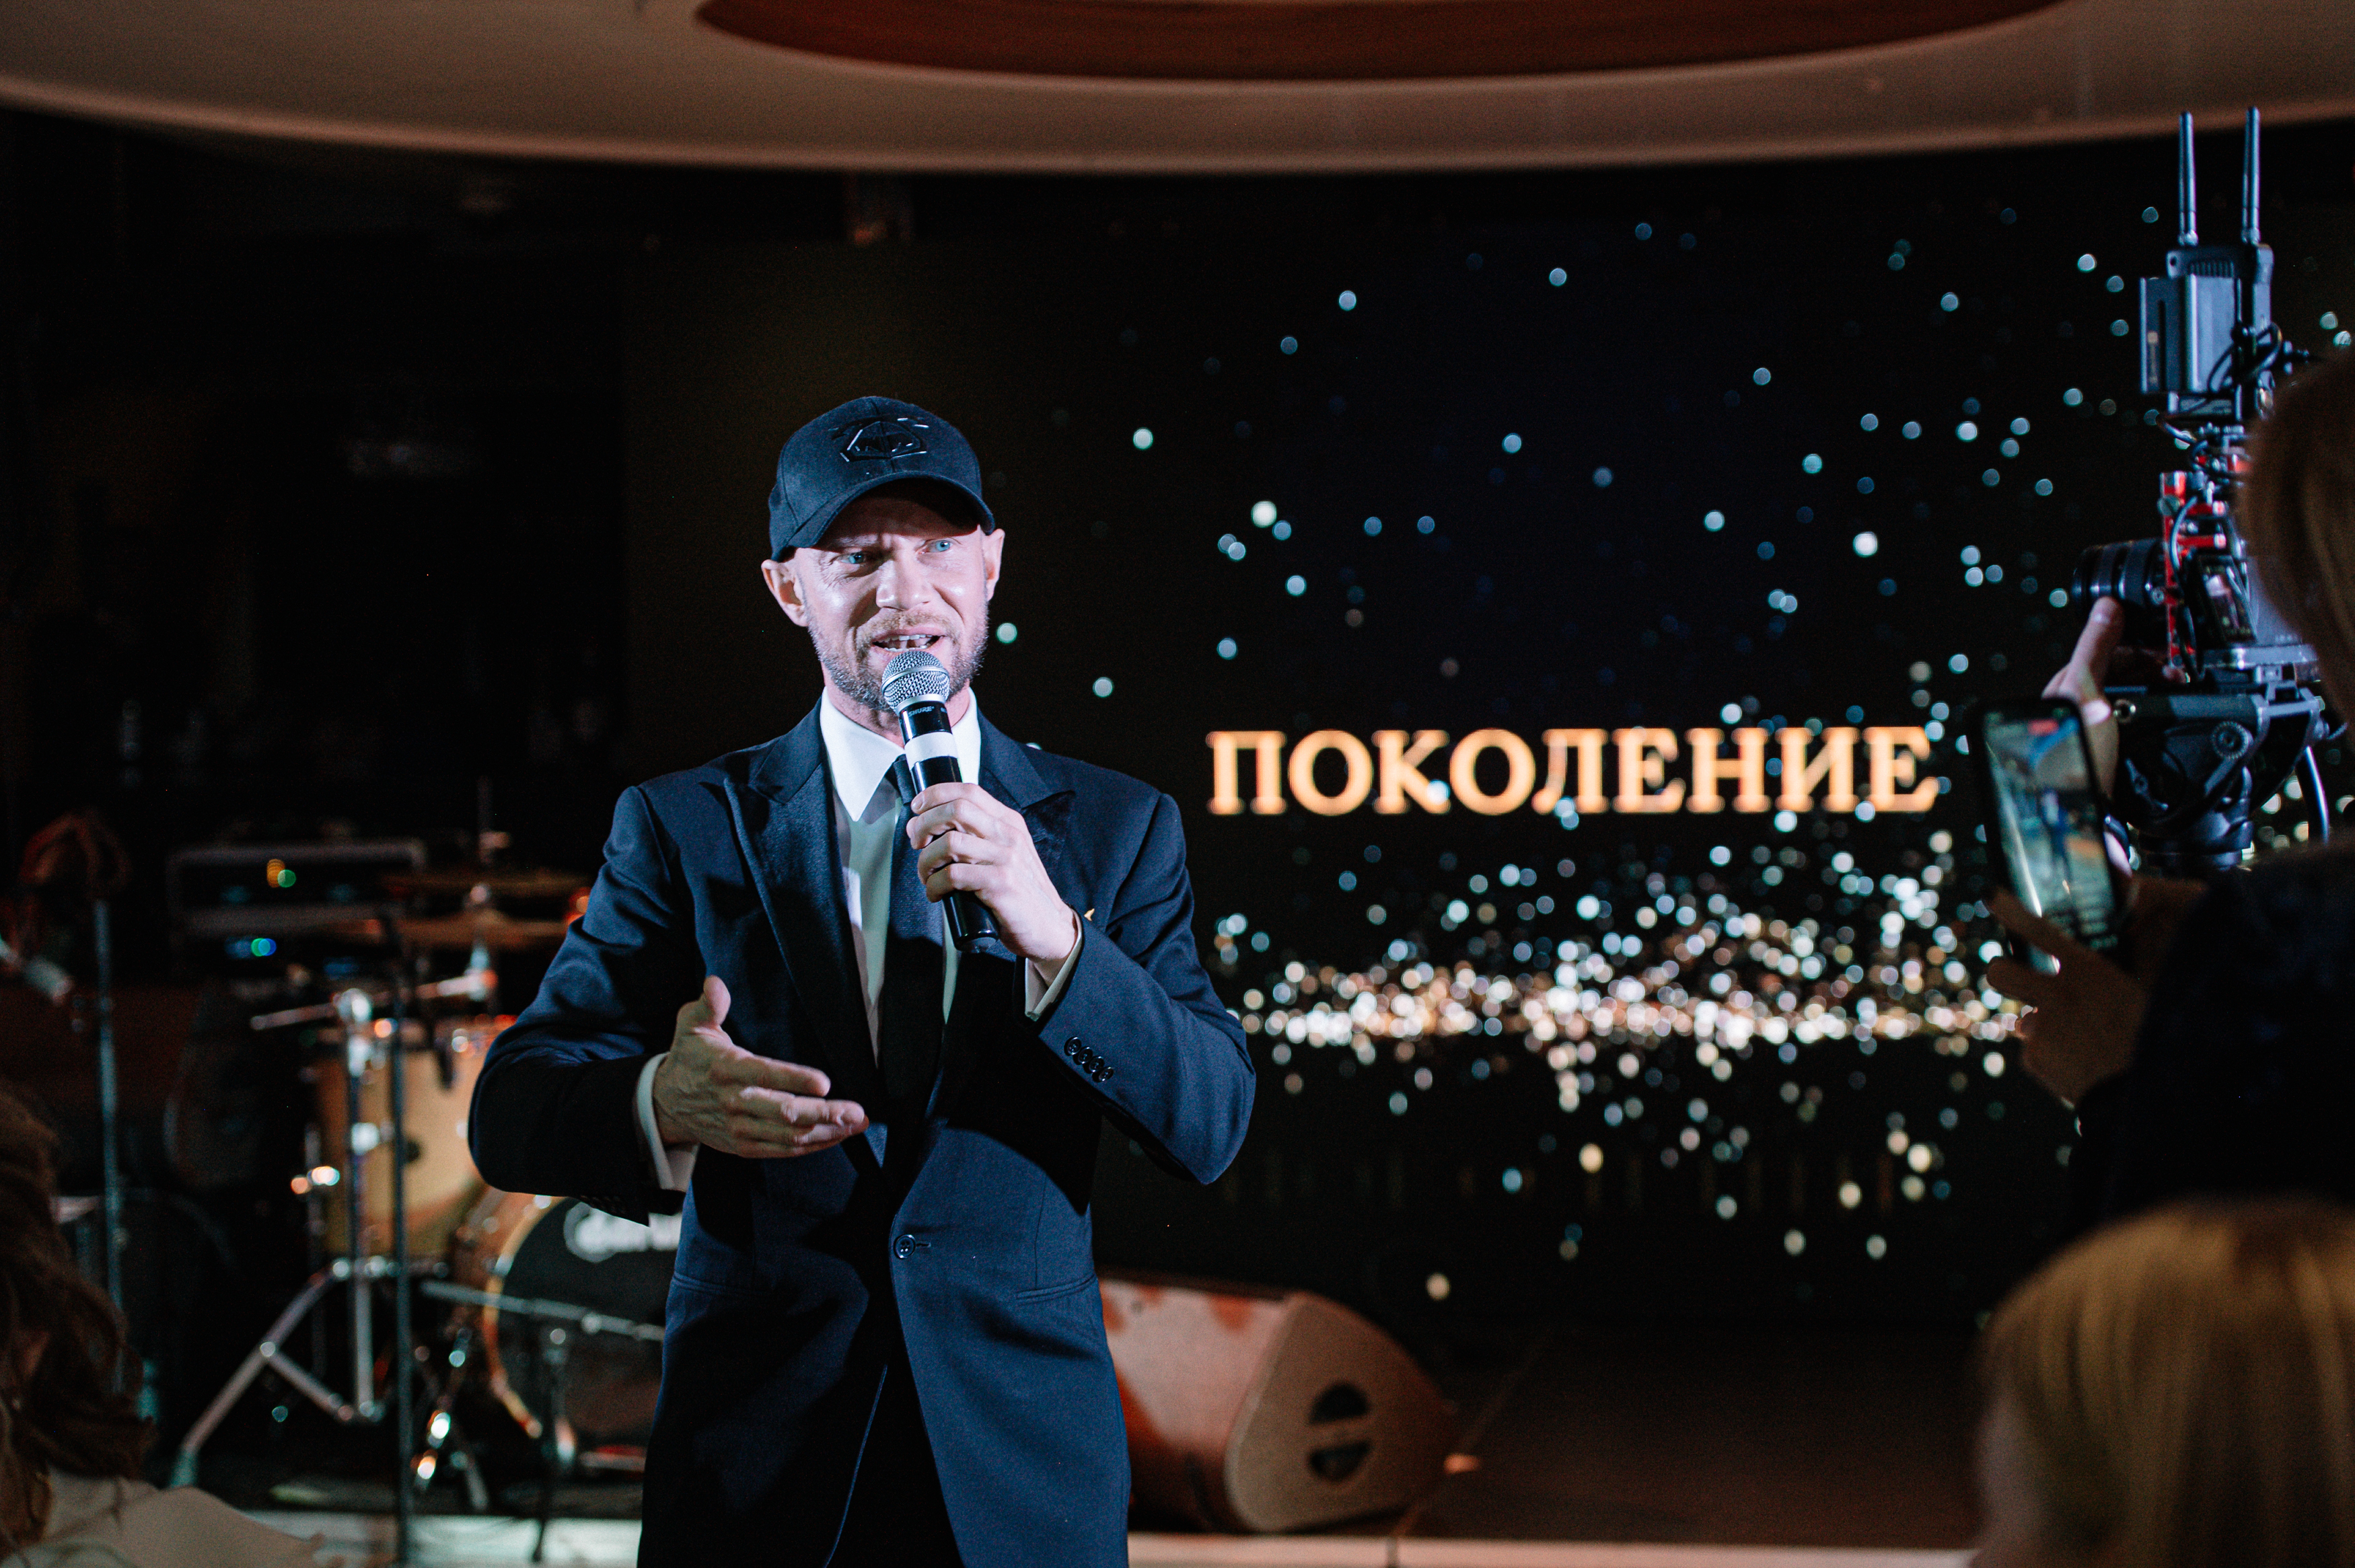 фото: Более 2 миллионов рублей для подопечных Фонда Константина Хабенского собрали на благотворительном вечере Ивана Сорокина «Поколение»